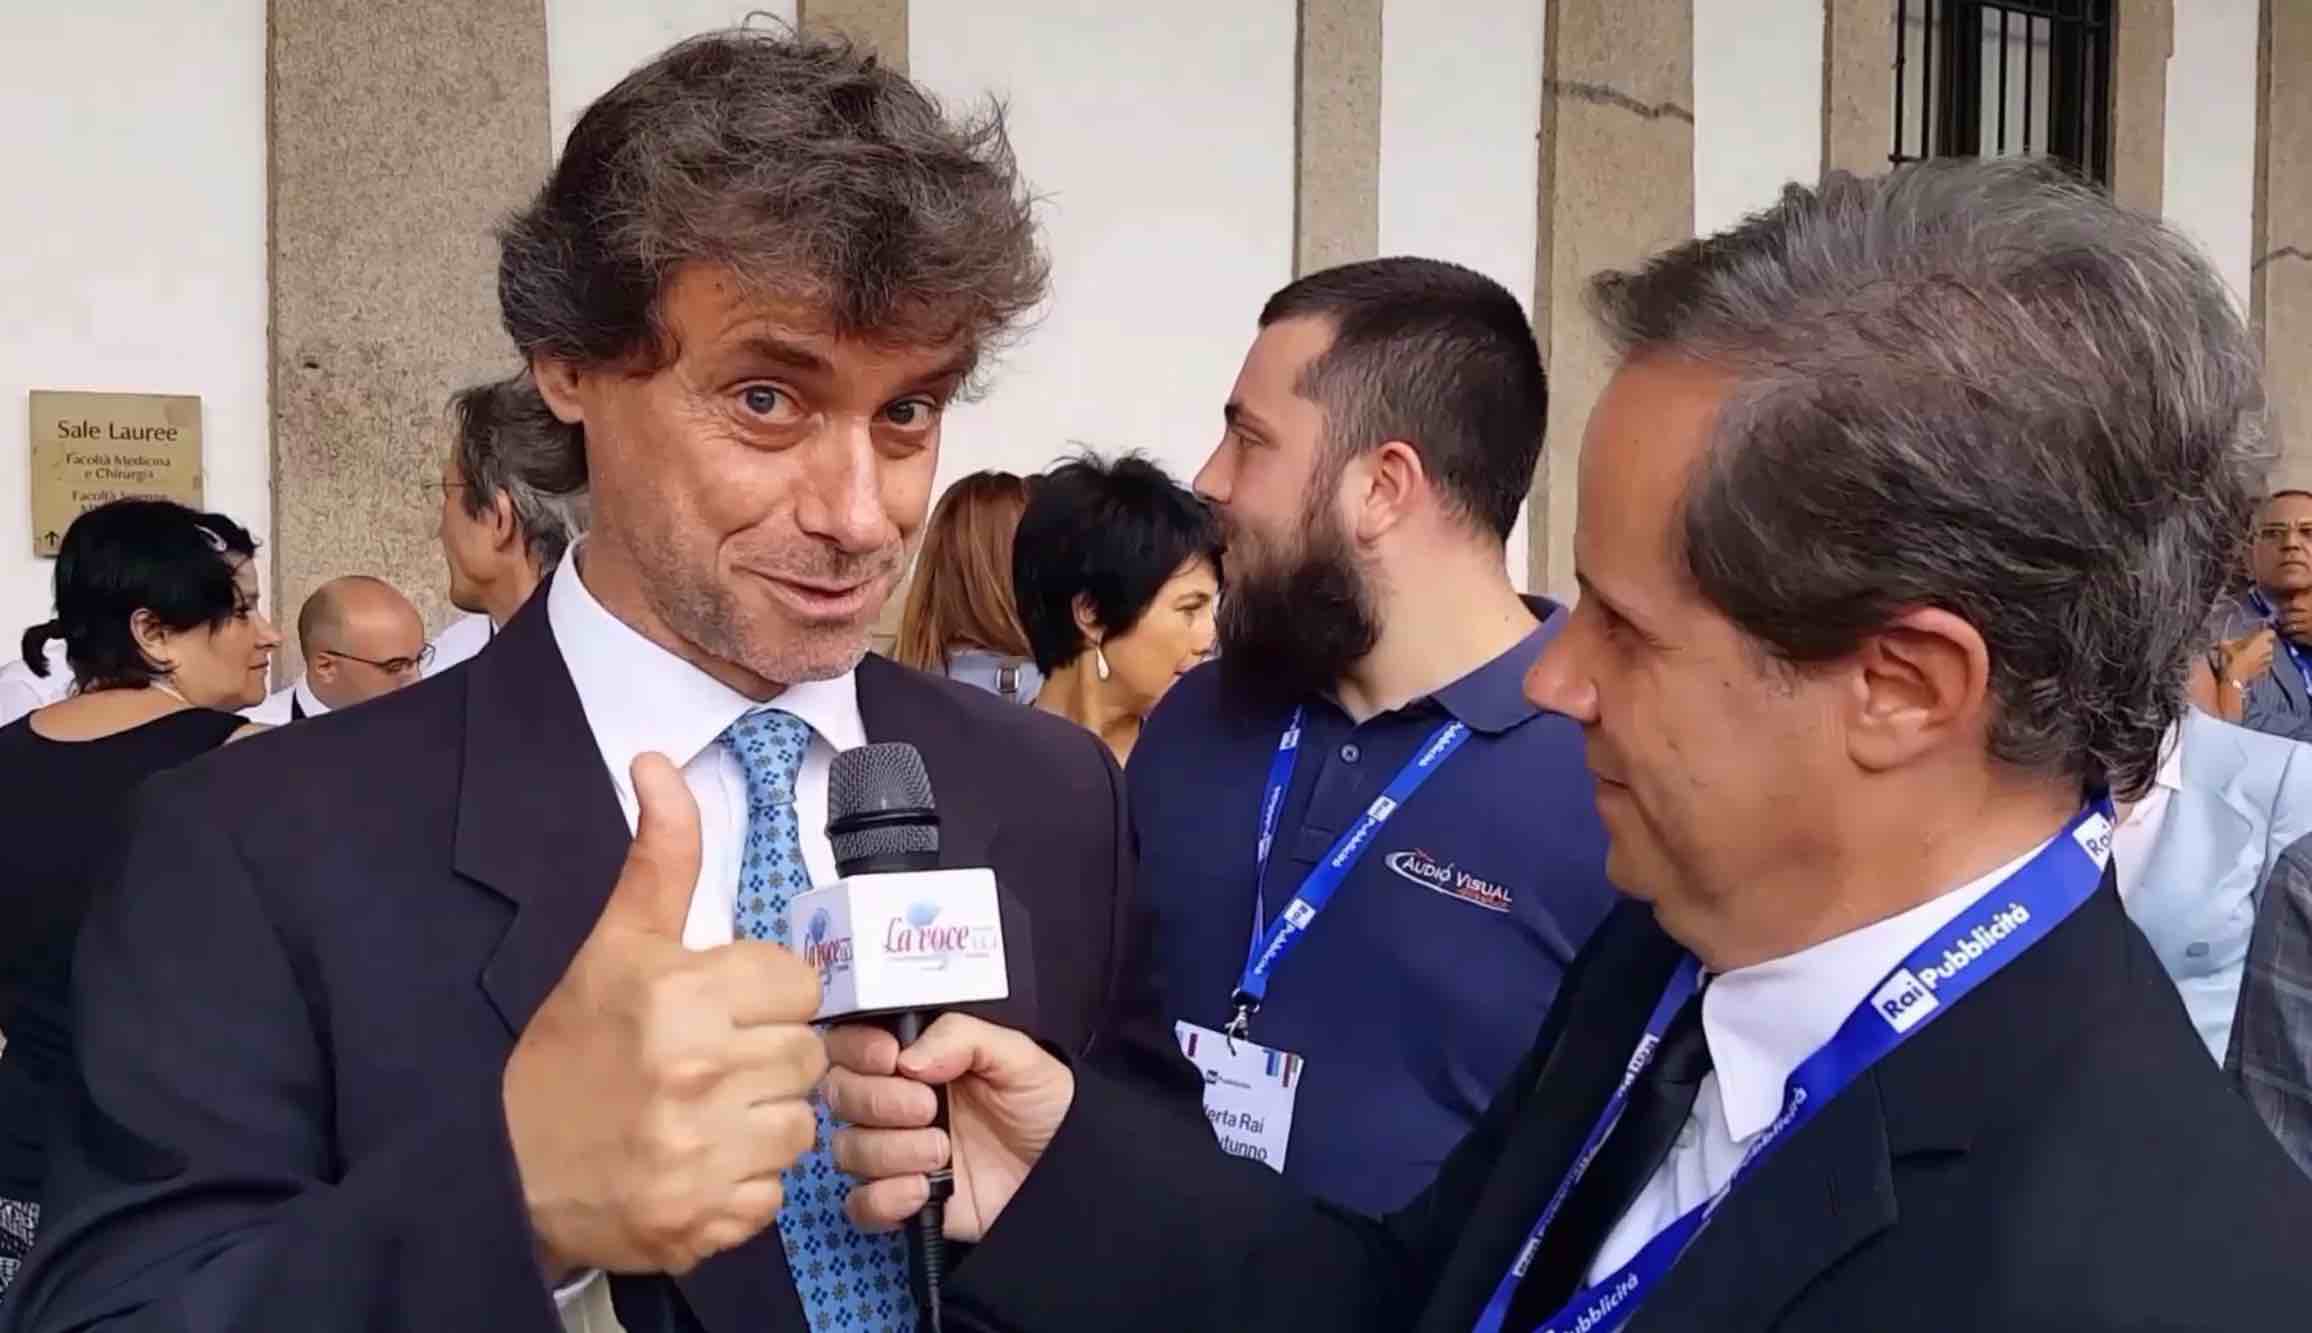 Alberto Angela intervistato dal giornalista Emilio Buttaro